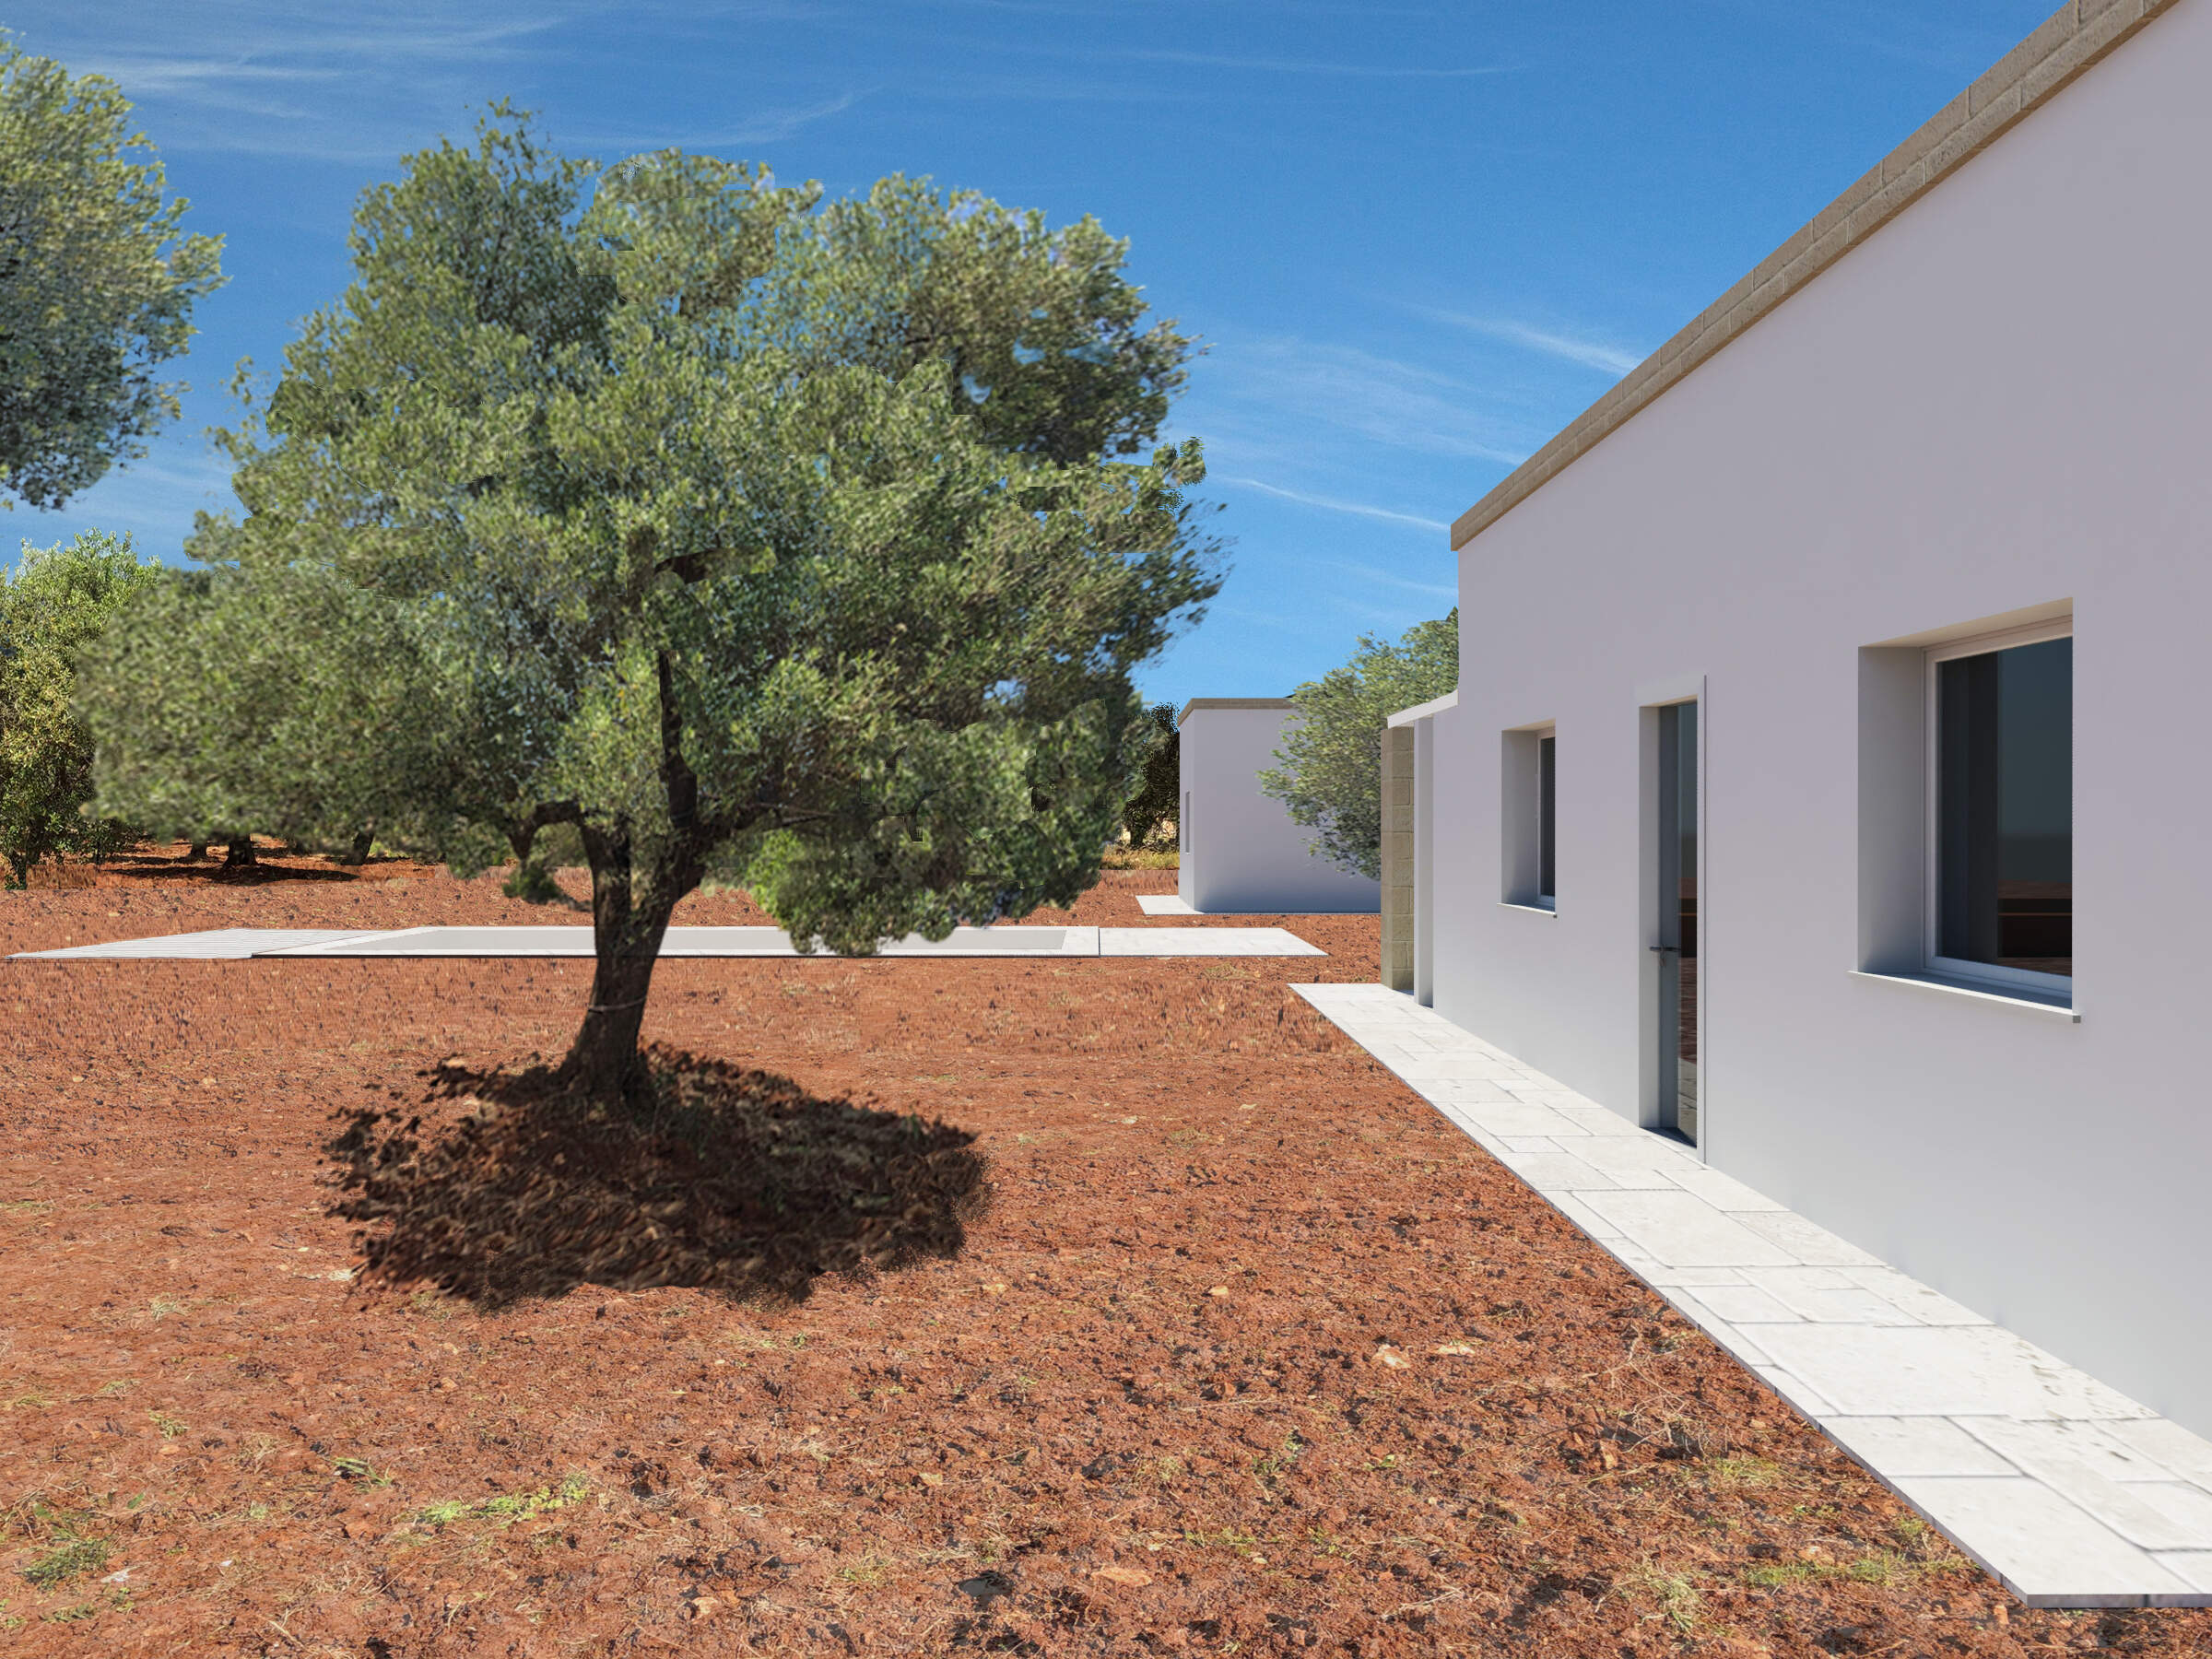 Nuova costruzione villa con piscina Carovigno Puglia